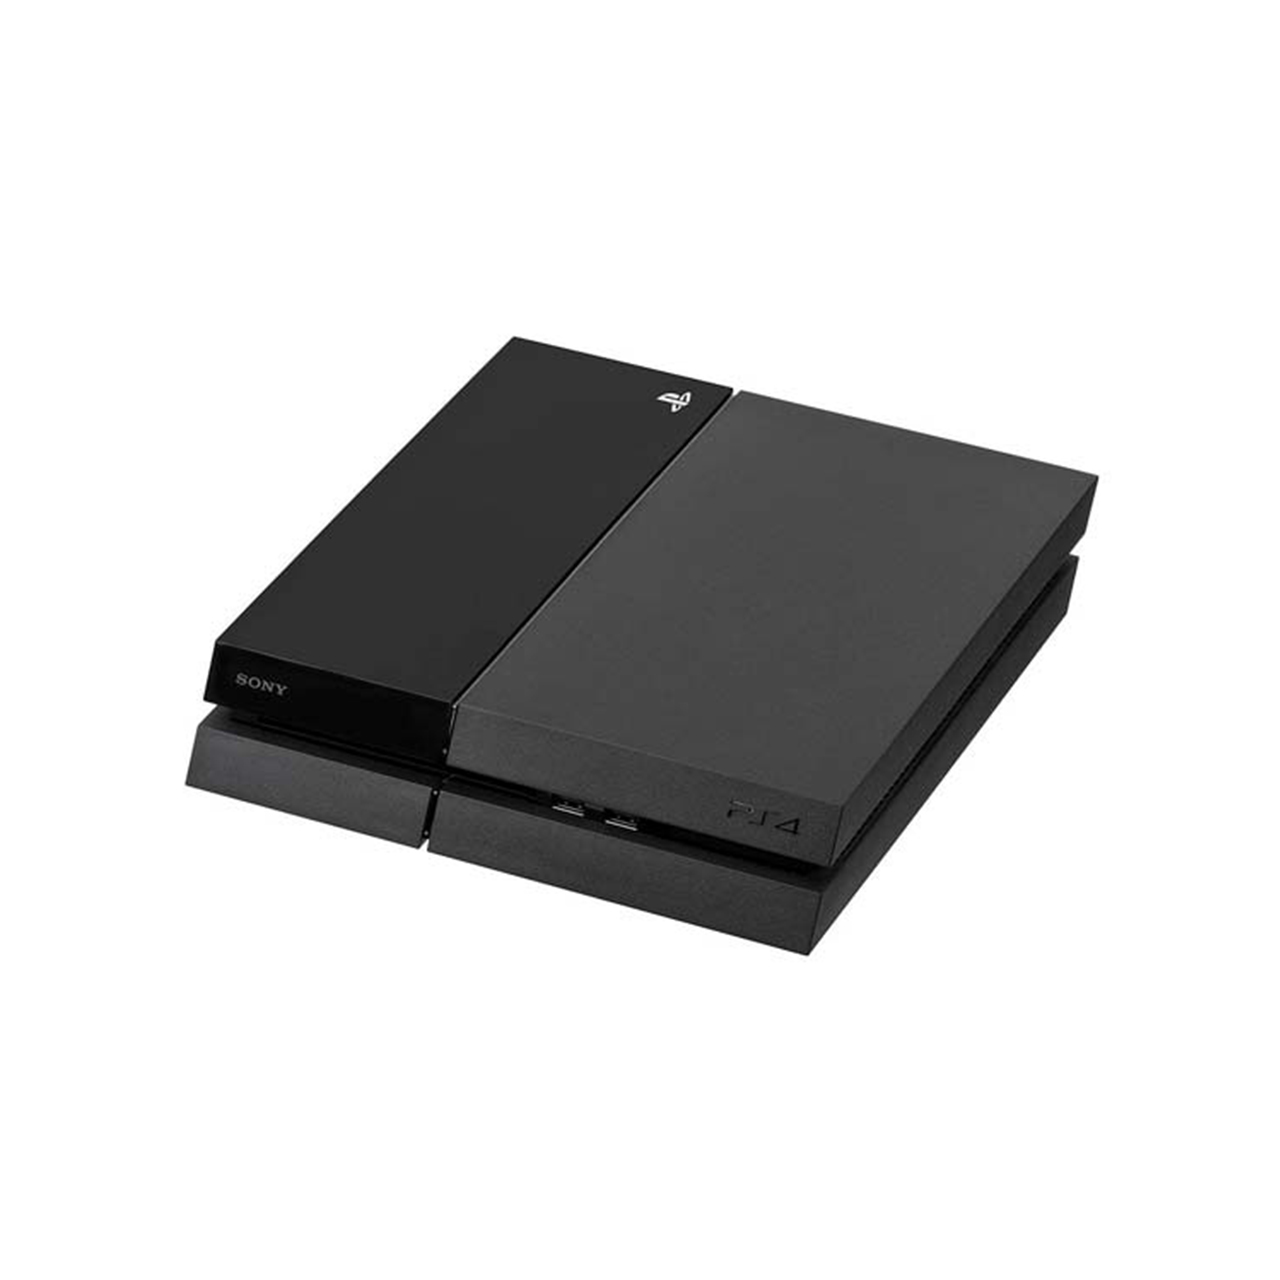 کنسول بازی سونی مدل Playstation 4 Fat ریجن 2, همراه بازی ,کد 1336